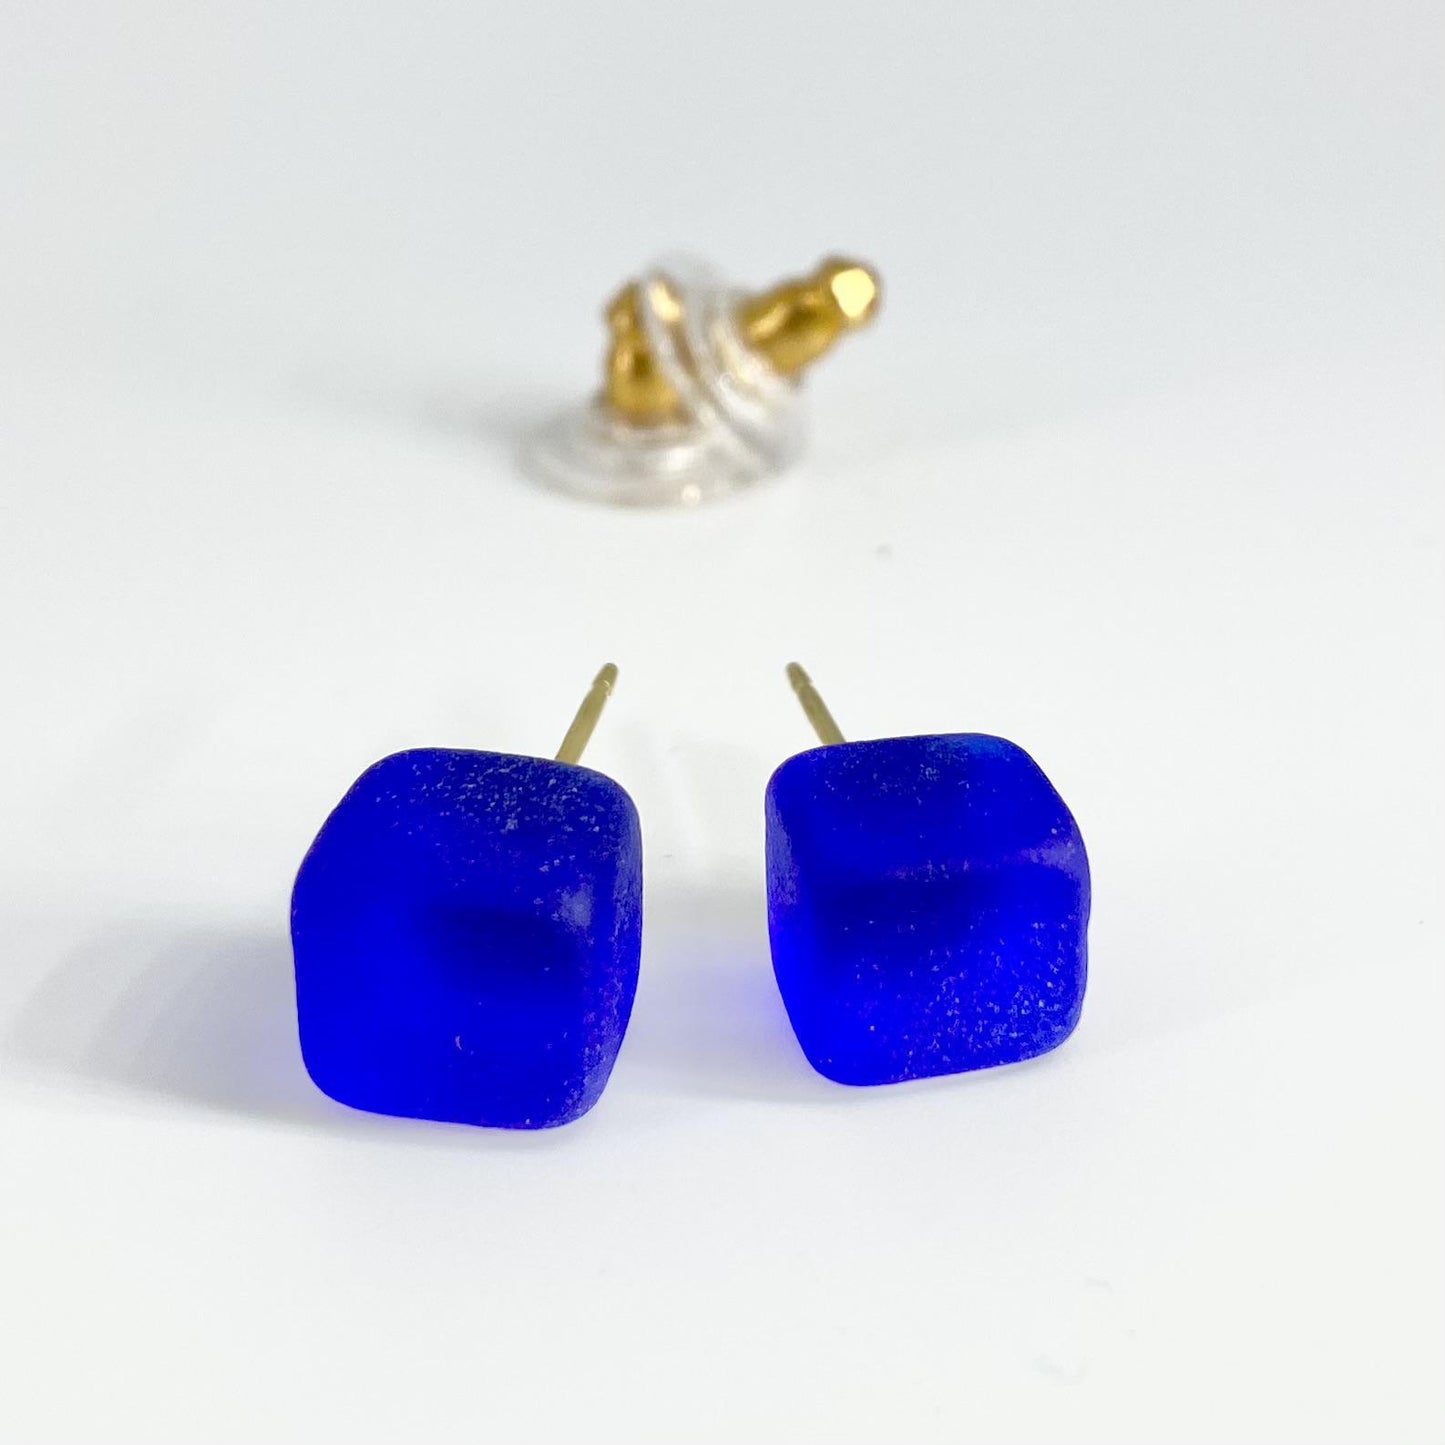 Post Earrings - Goldfill & Reclaimed Glass - Cobalt